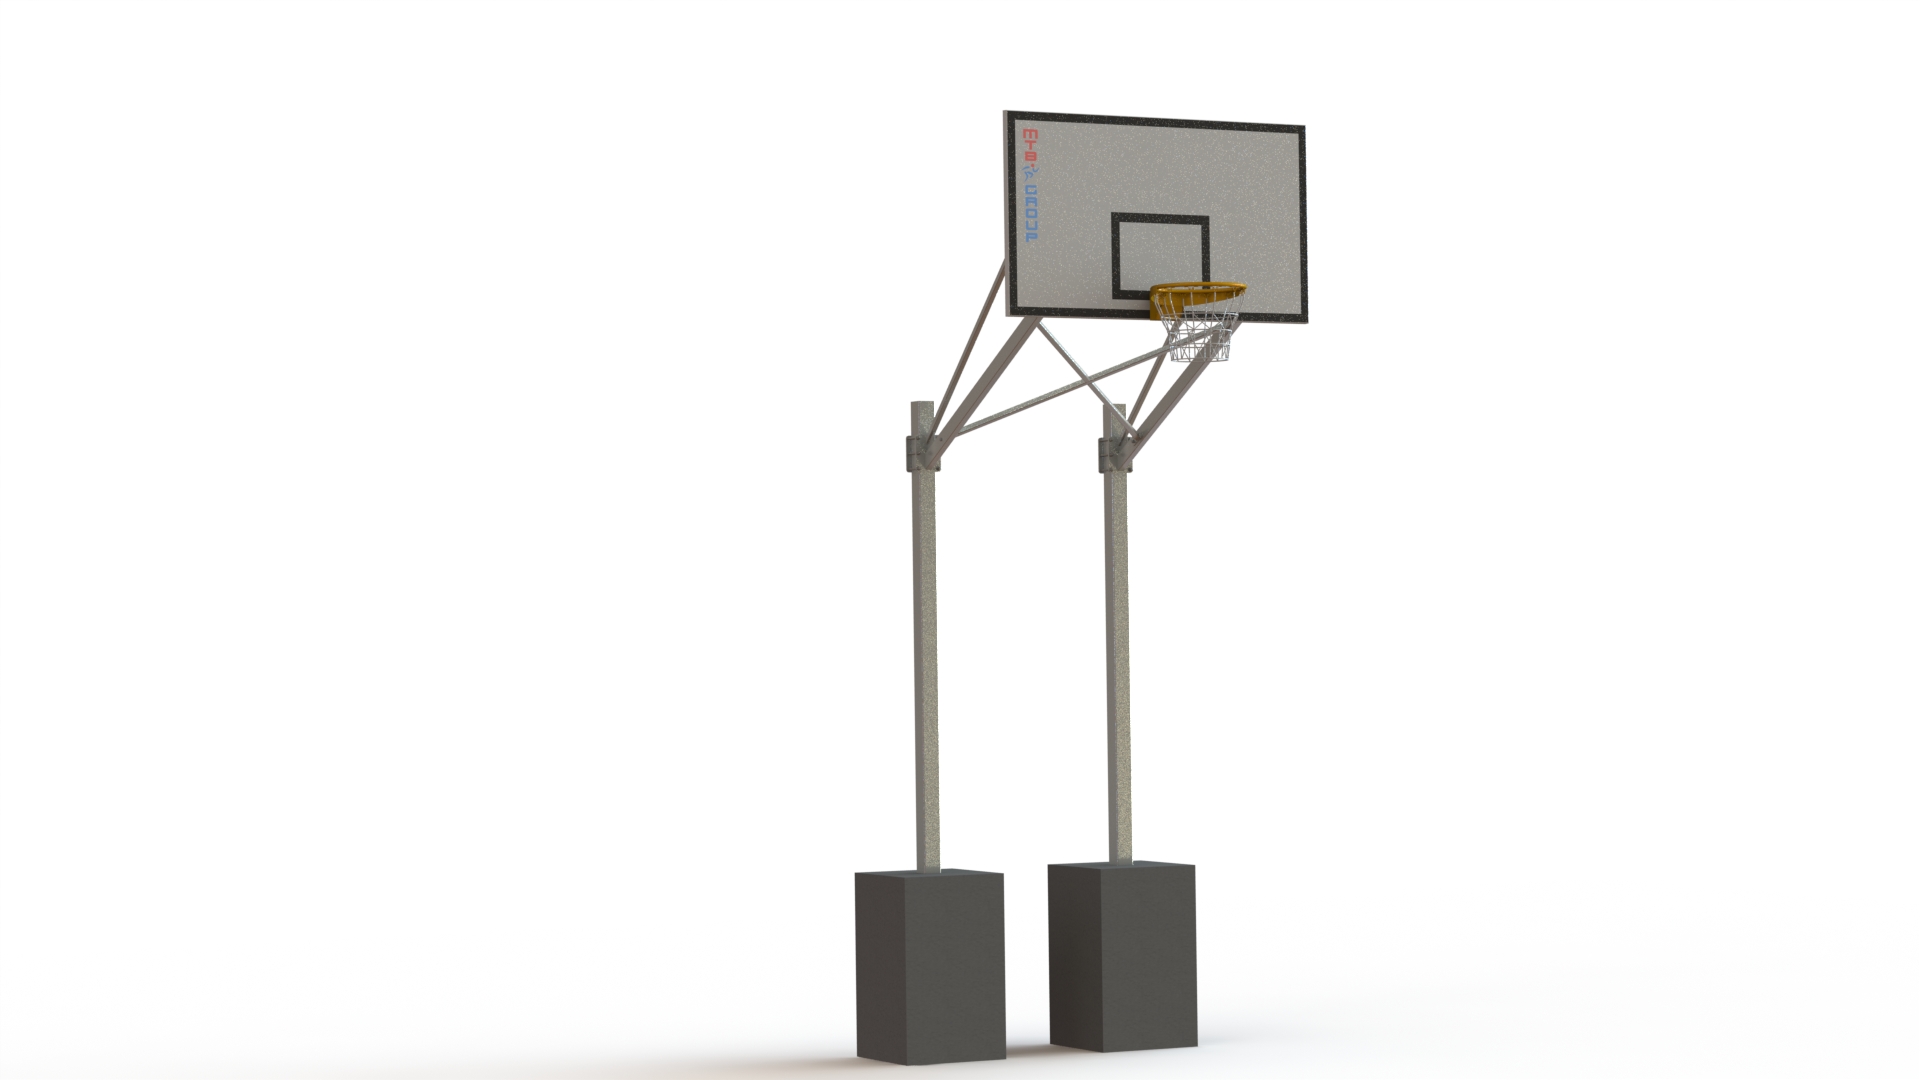 Basketbalová konstrukce dvousloupová, výsun 1,6 m